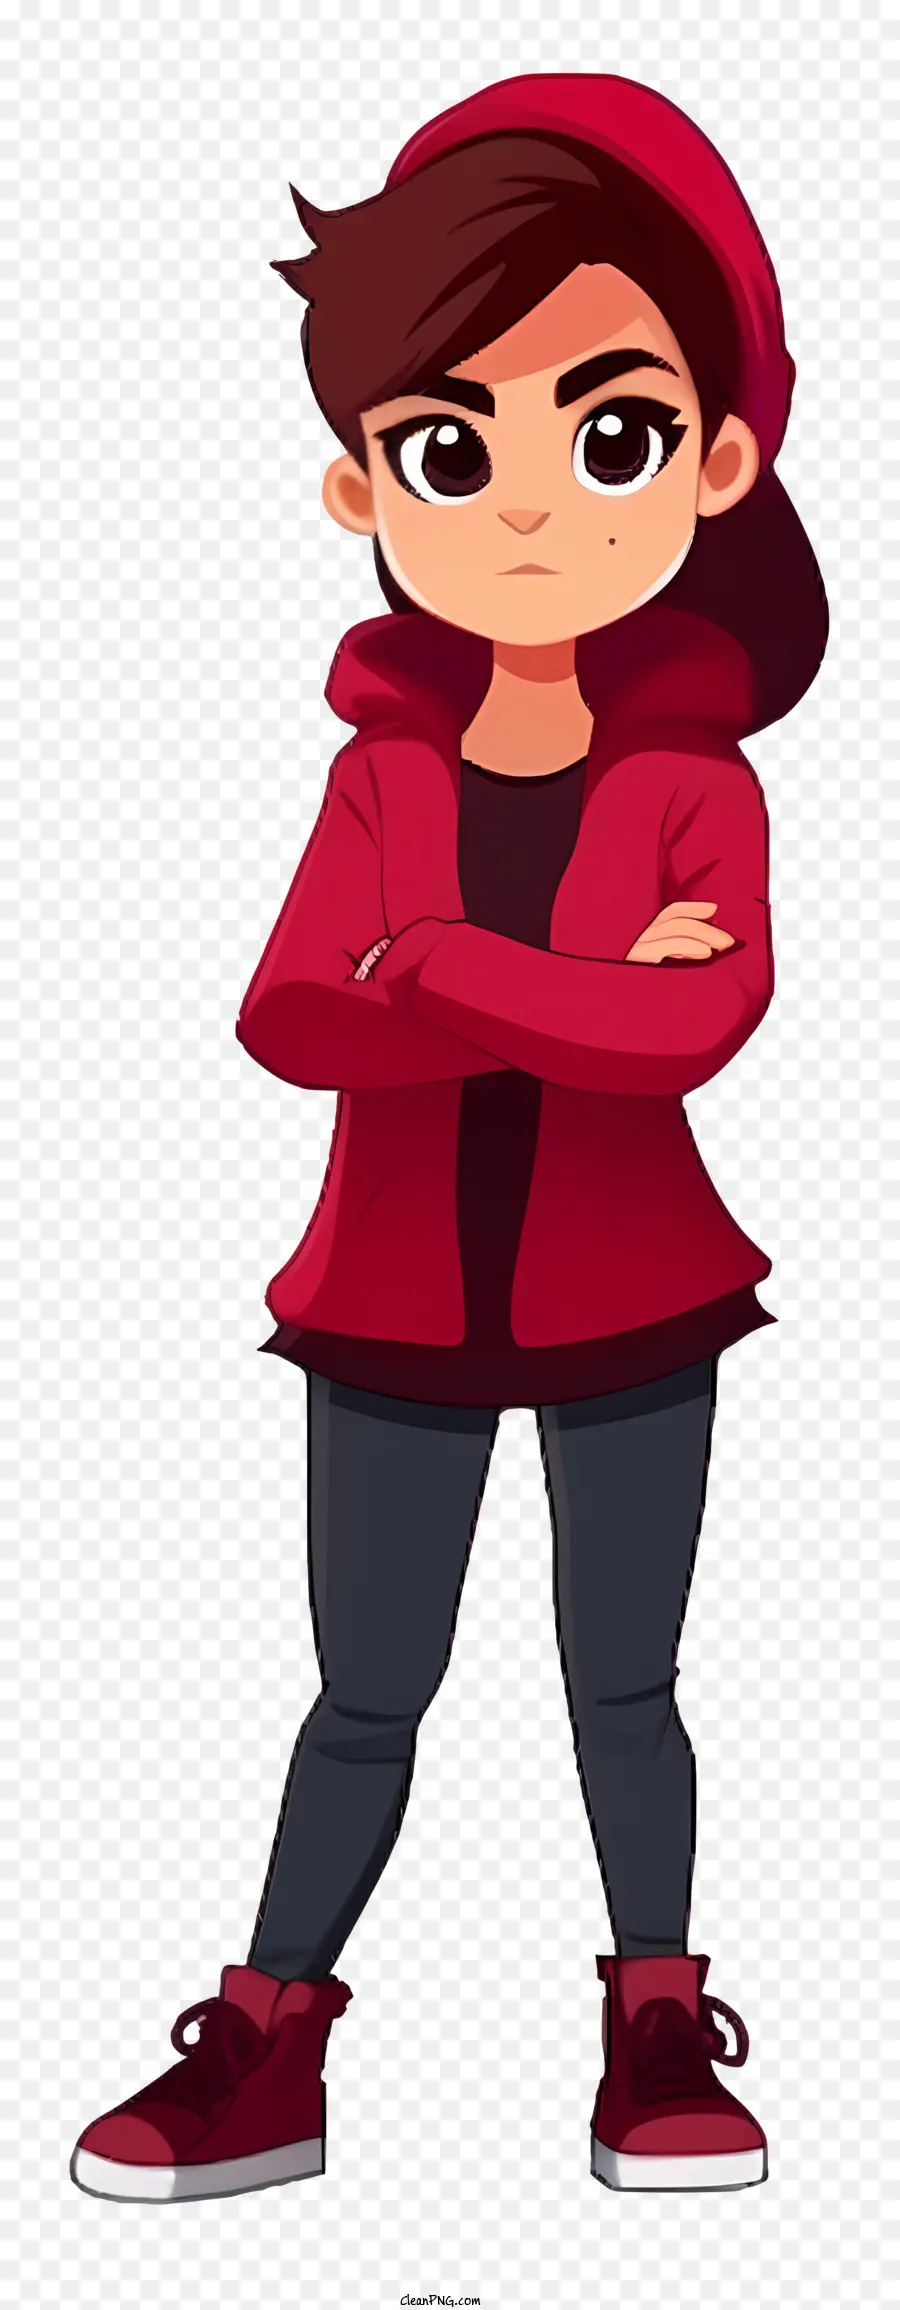 Cartoon tragen rote Tag junge Menschen rote Jacke schwarze Hosen lässiger Ausdruck - Junge Person in roter Jacke und schwarzen Hosen